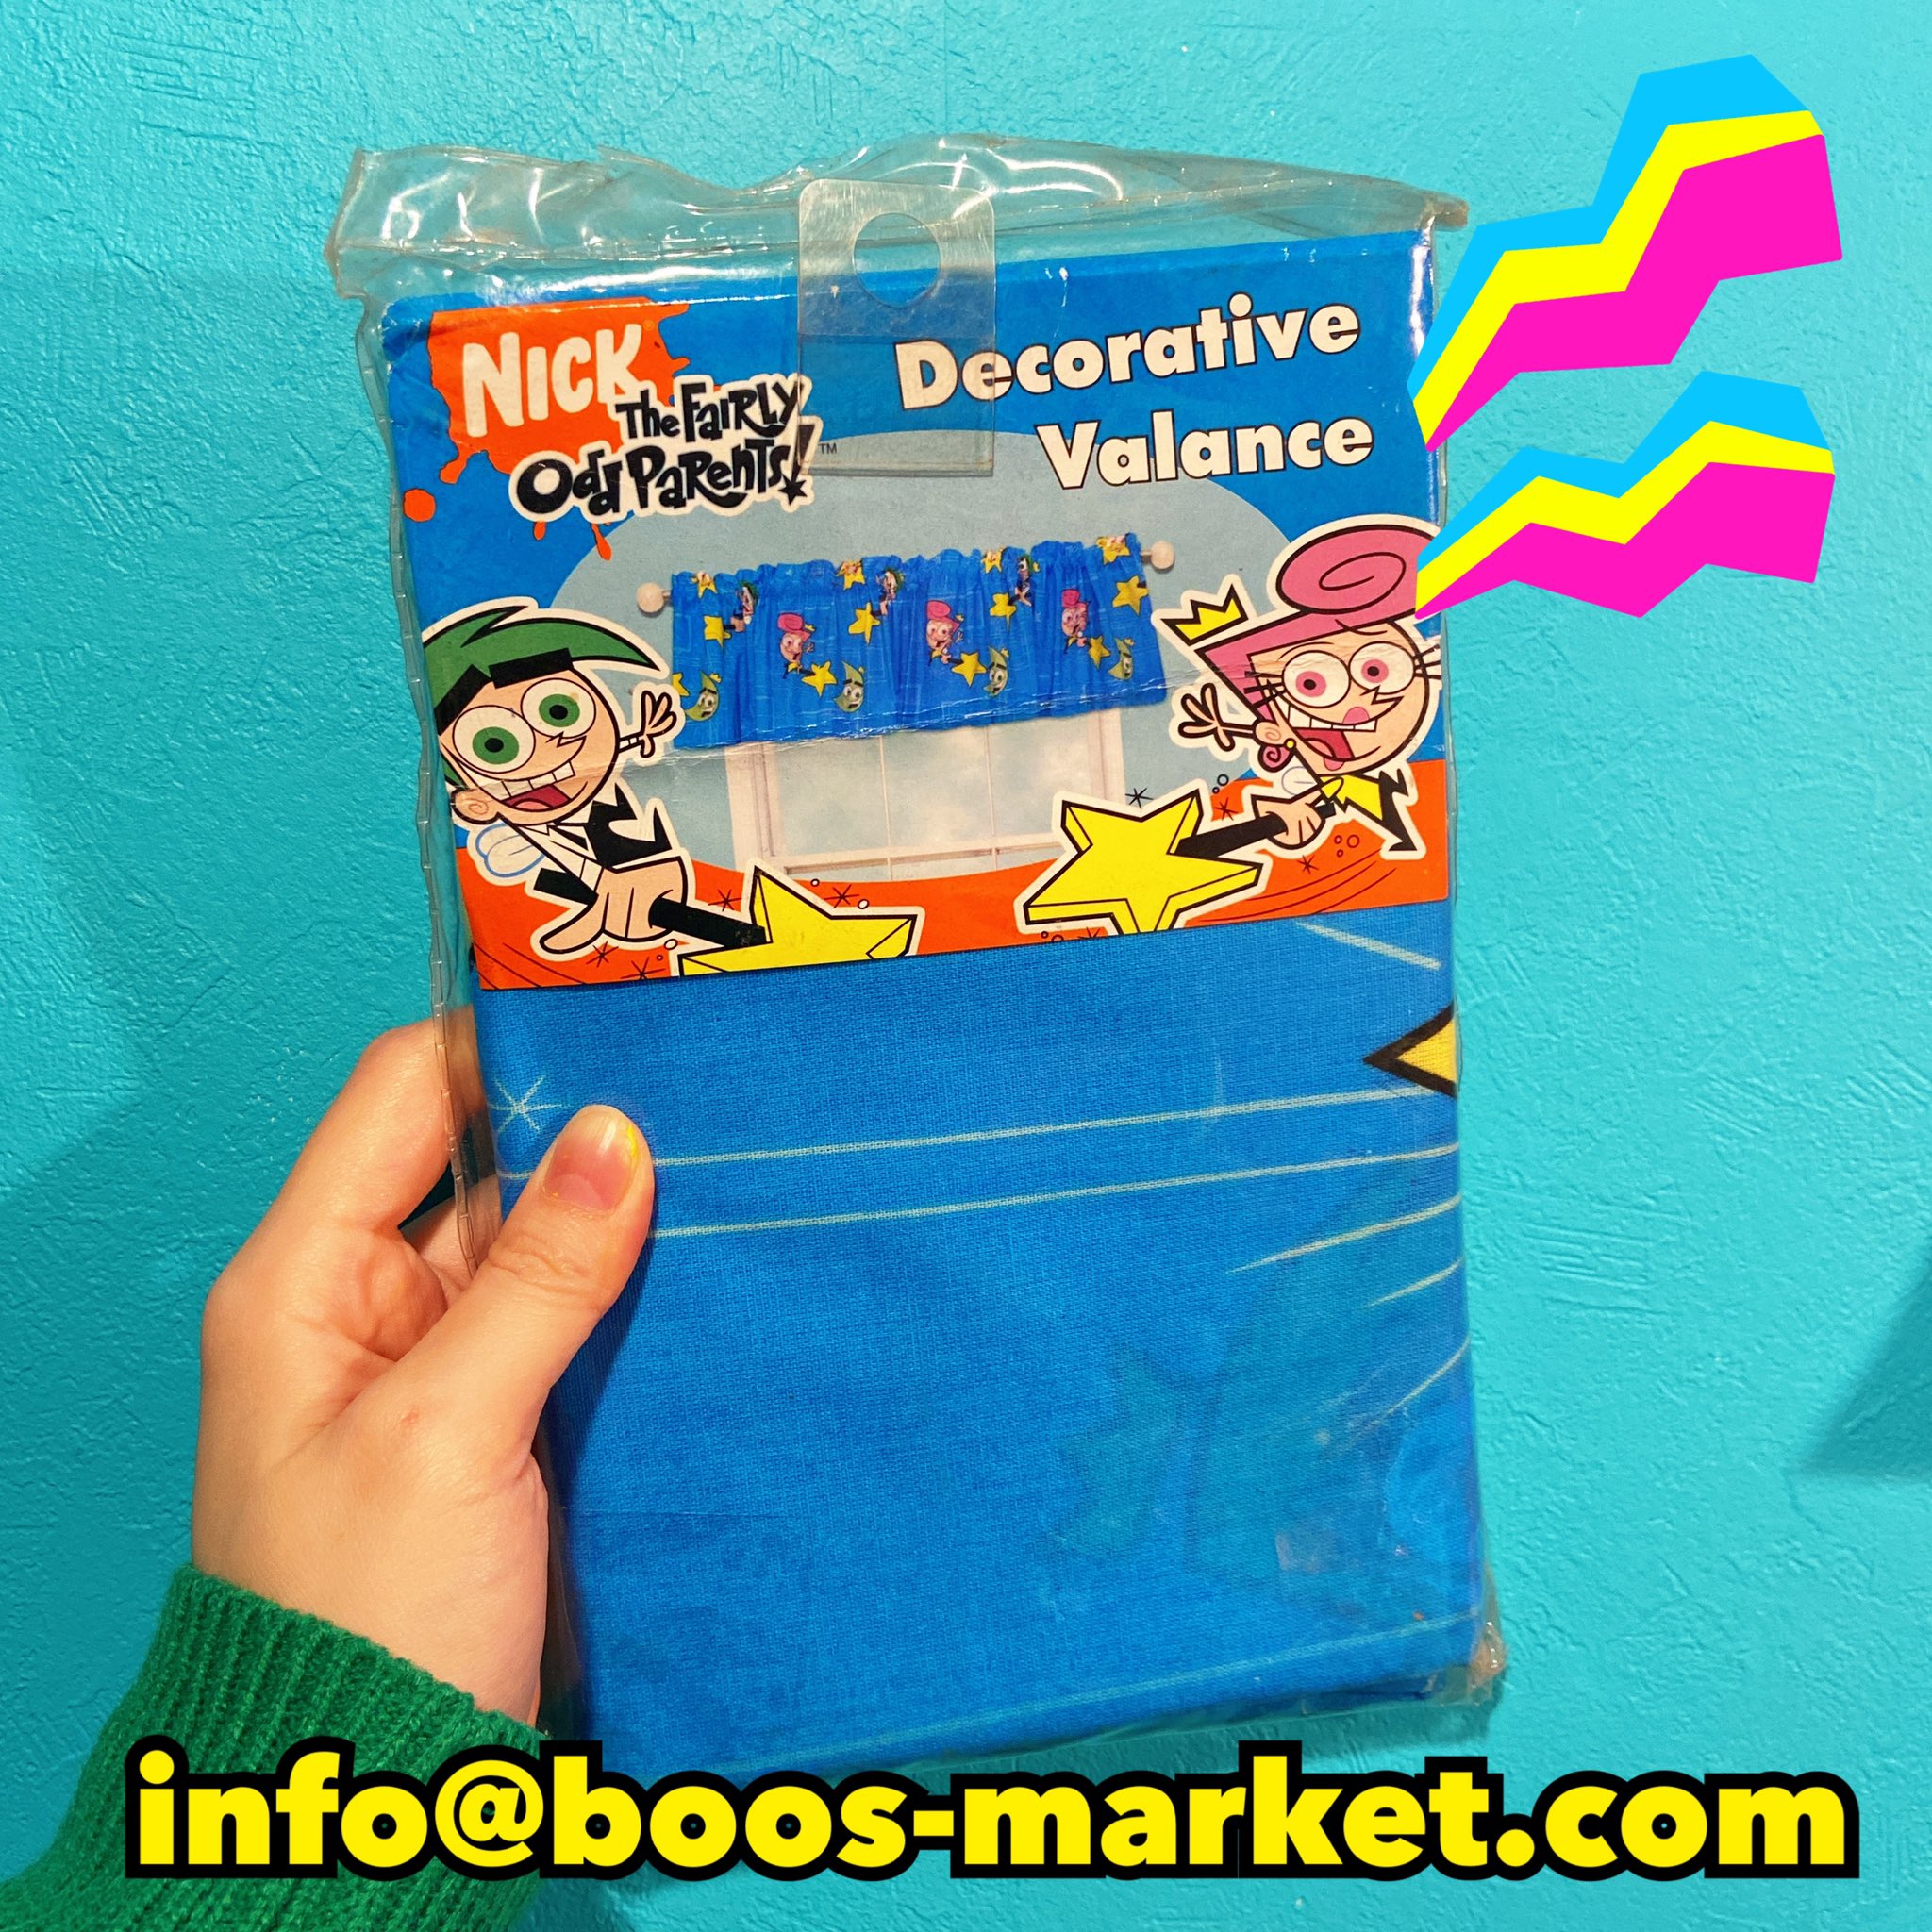 ট ইট র Boo S Market 03 S Nickelodeon The Fairy Odd Parents Decorative Valance 2750yen Oops フェアリーペアレンツのデコレーションカーテン入荷しました サイズは213cm 38cmです カーテン以外にも色々使えそうです Thefairyoddparents